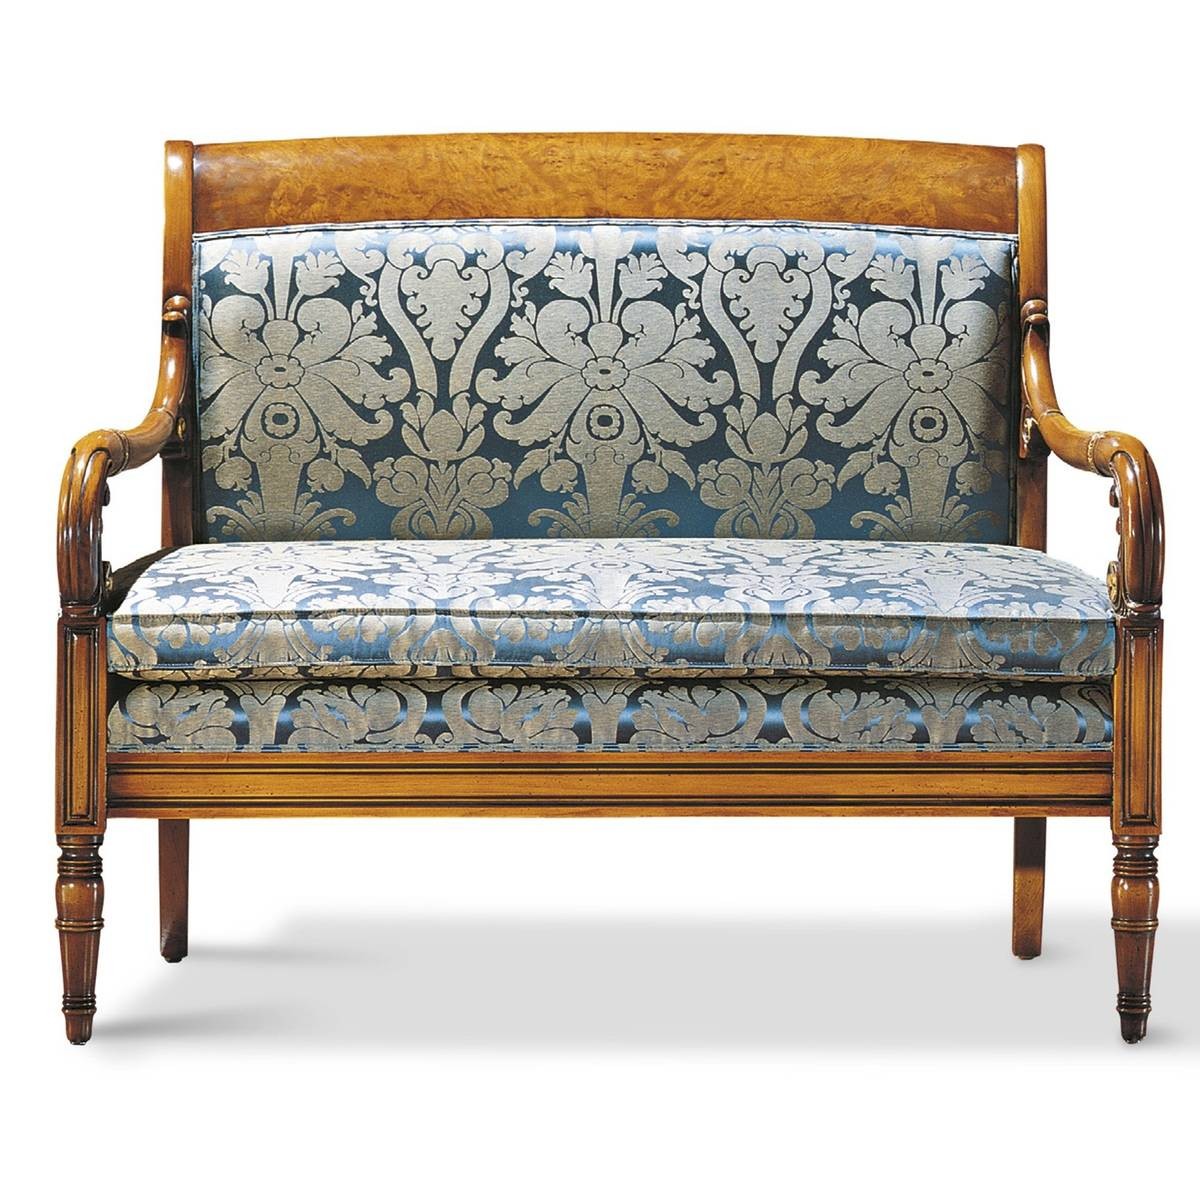 Прямой диван The Upholstery/D7 из Италии фабрики FRANCESCO MOLON